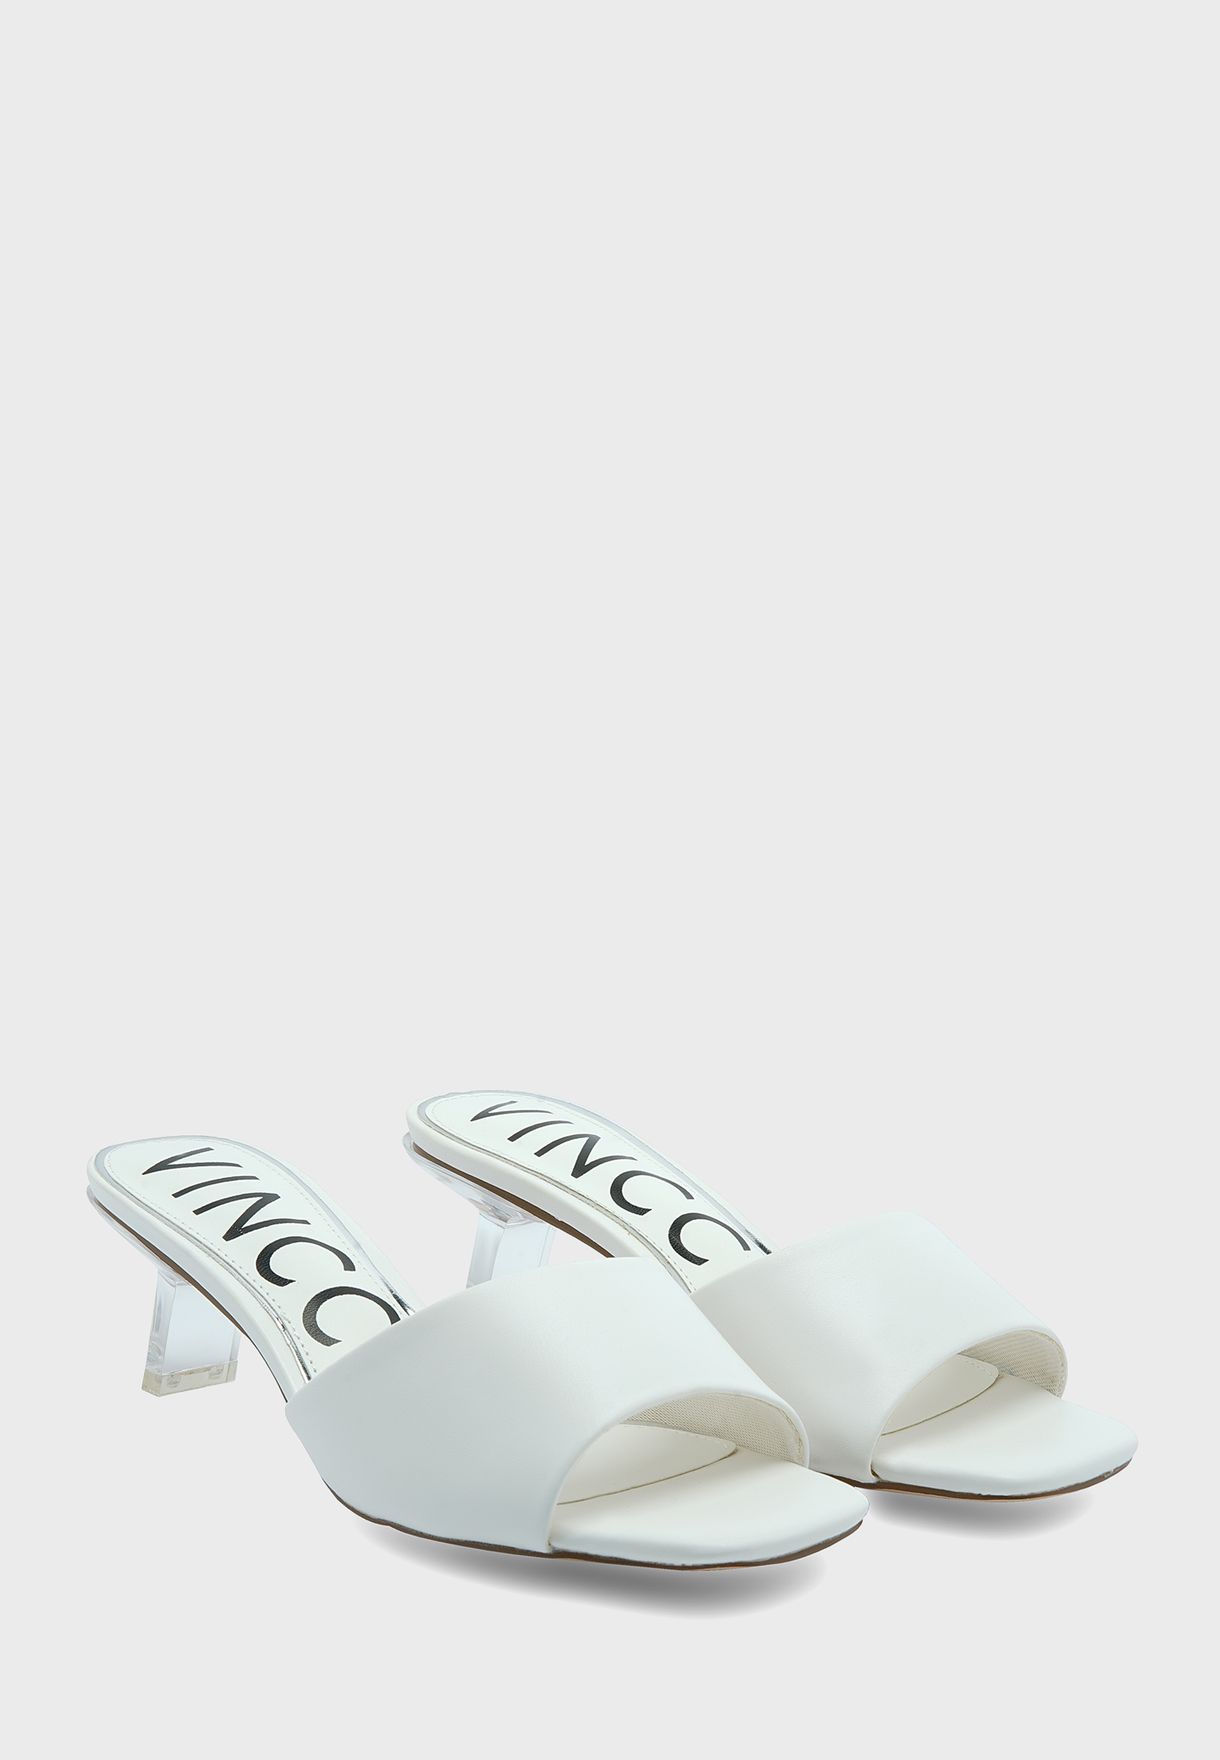 vincci white shoes